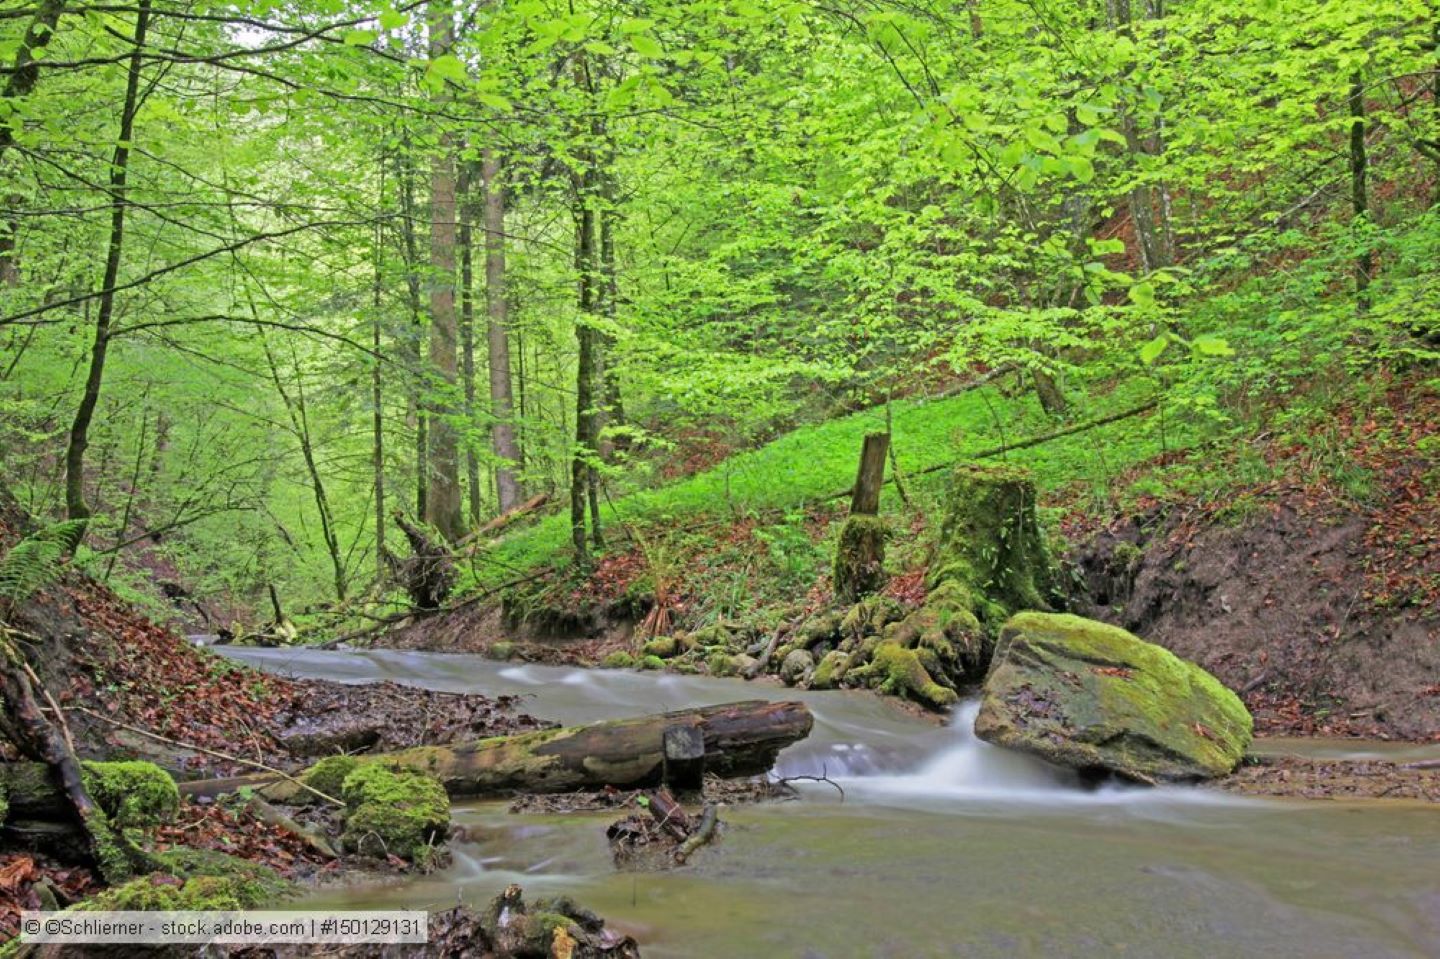 Luxemburg: Etwa die Hälfte der Oberflächengewässer in einem durchschnittlichen ökologischen Zustand